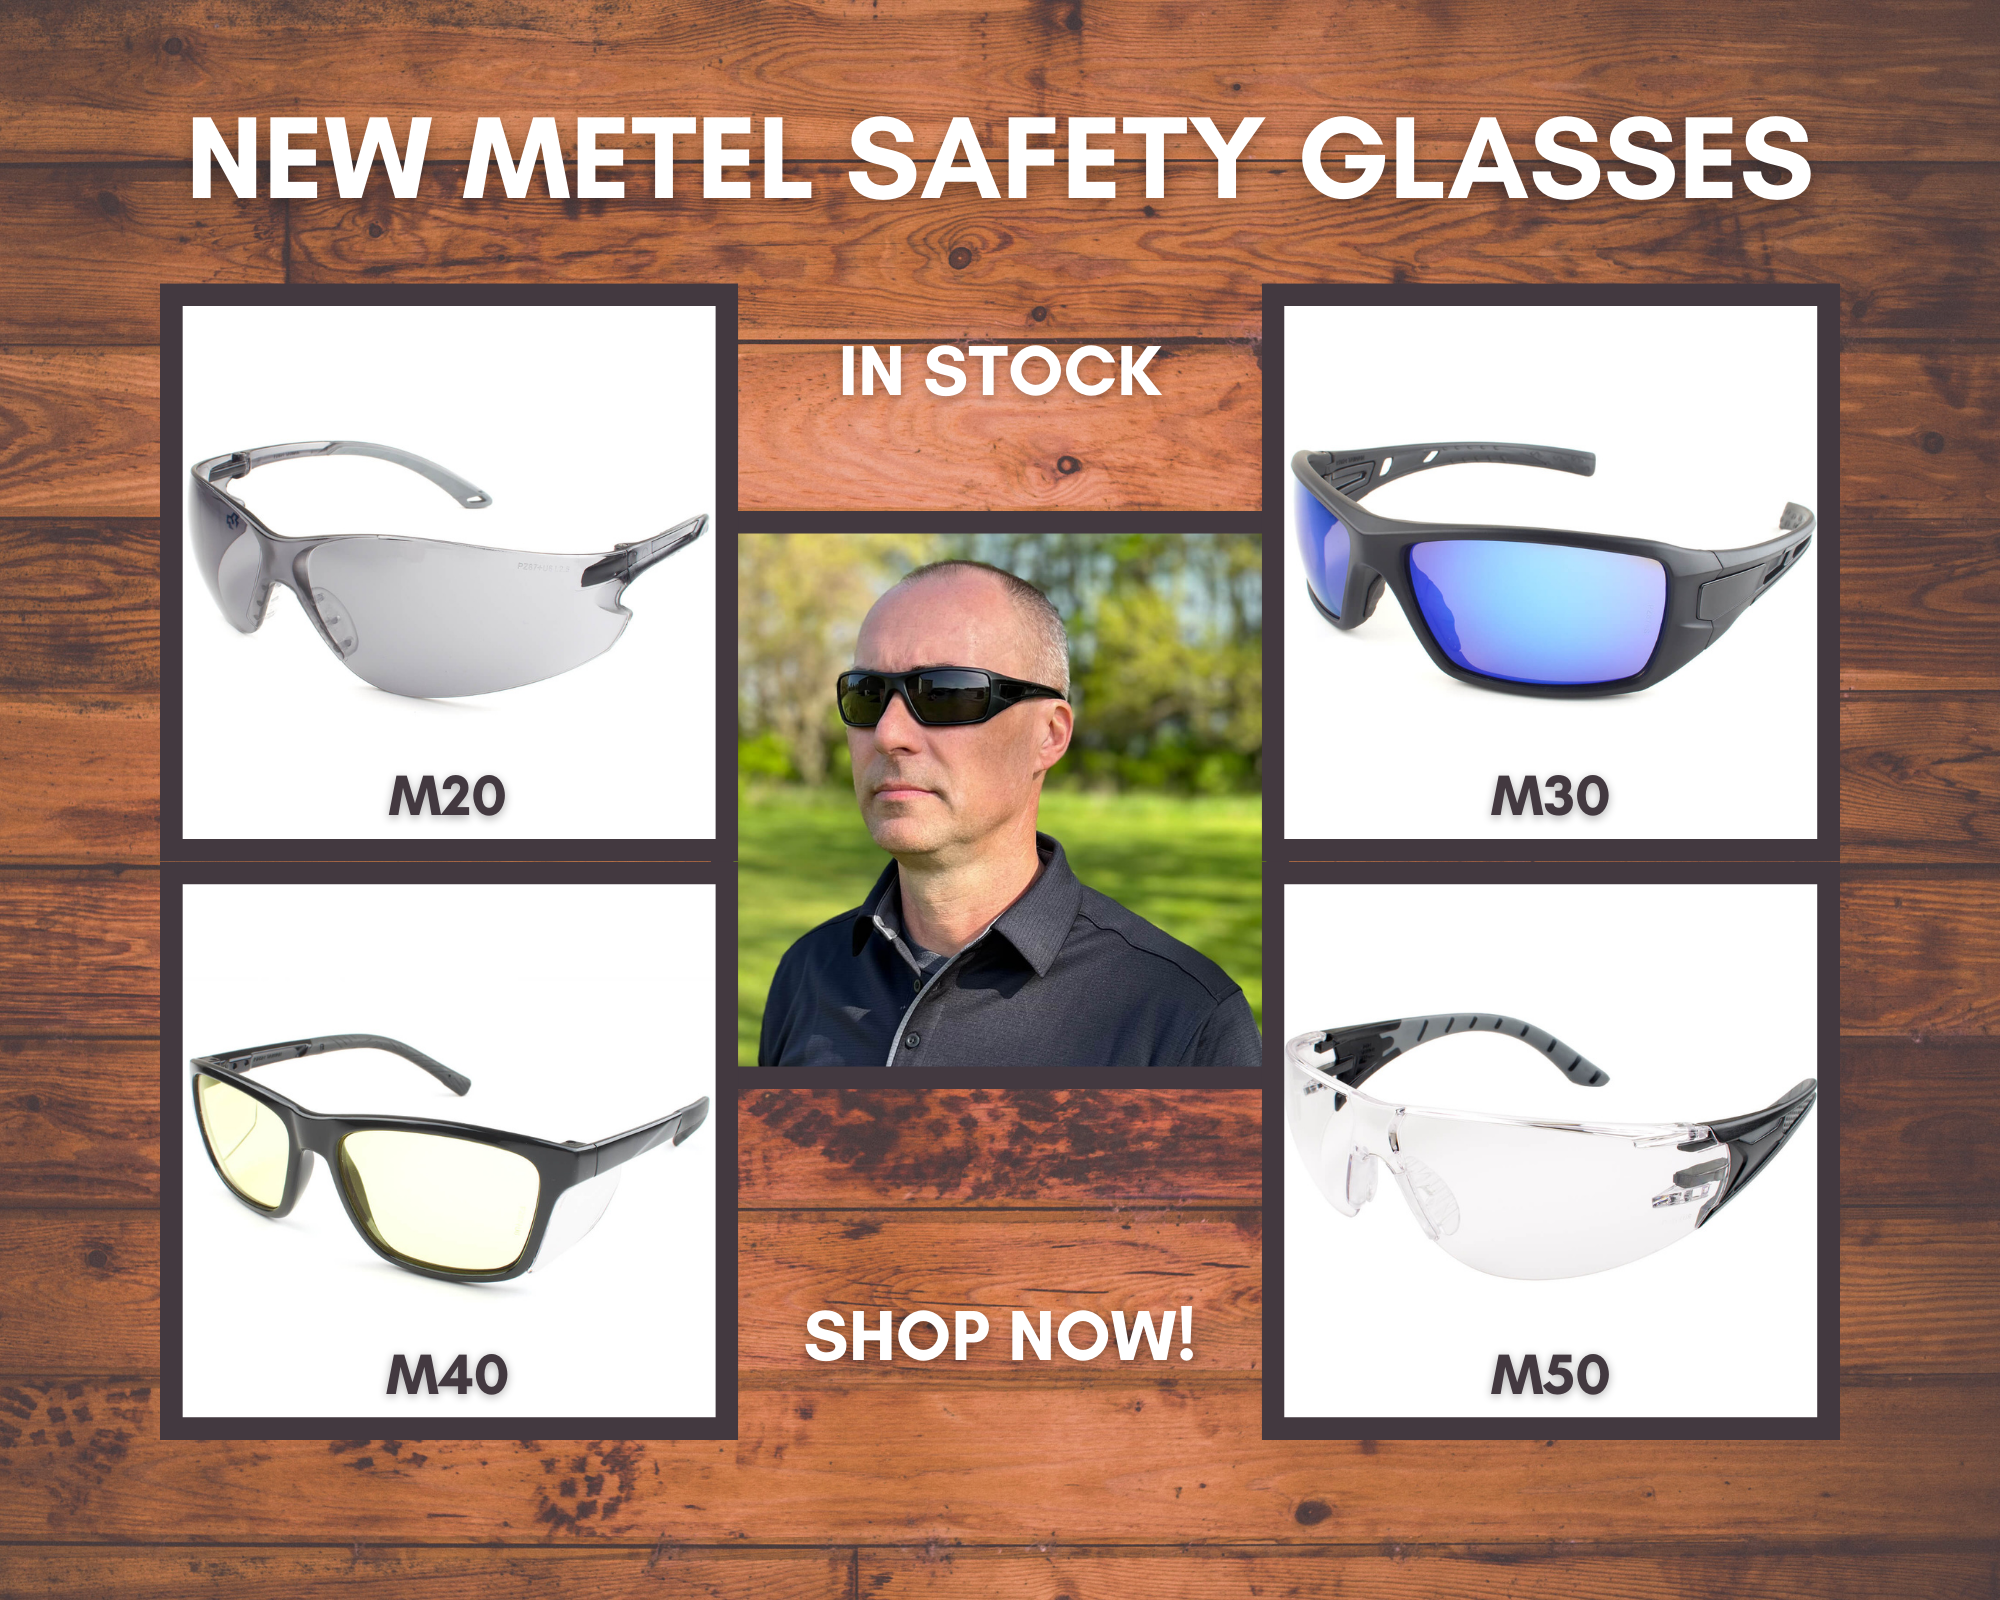 METEL Safety Eyewear Styles